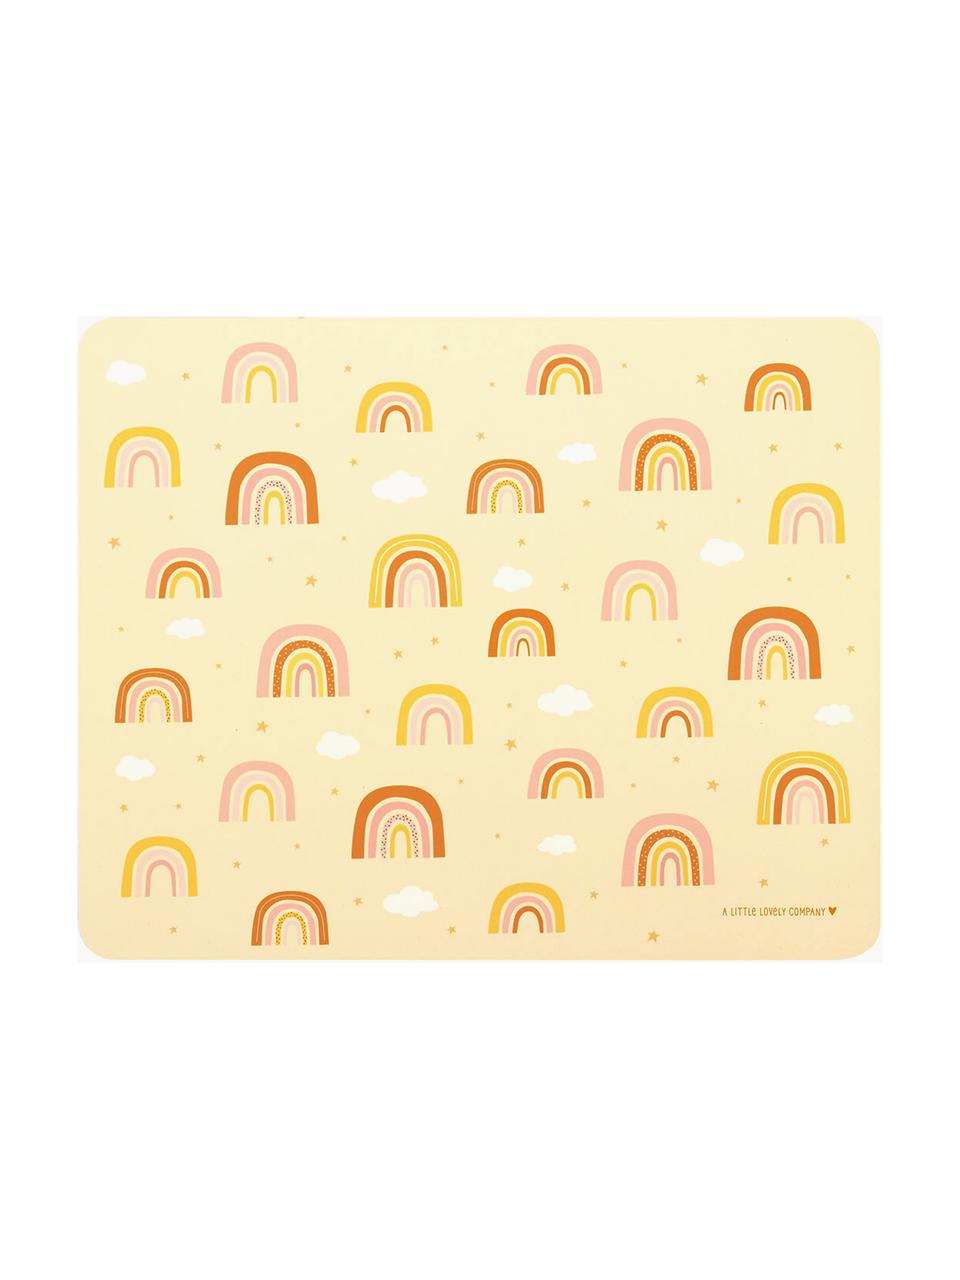 Podkładka Rainbows, Kauczuk, Jasny żółty, odcienie różowego, odcienie pomarańczowego, S 43 x D 34 cm